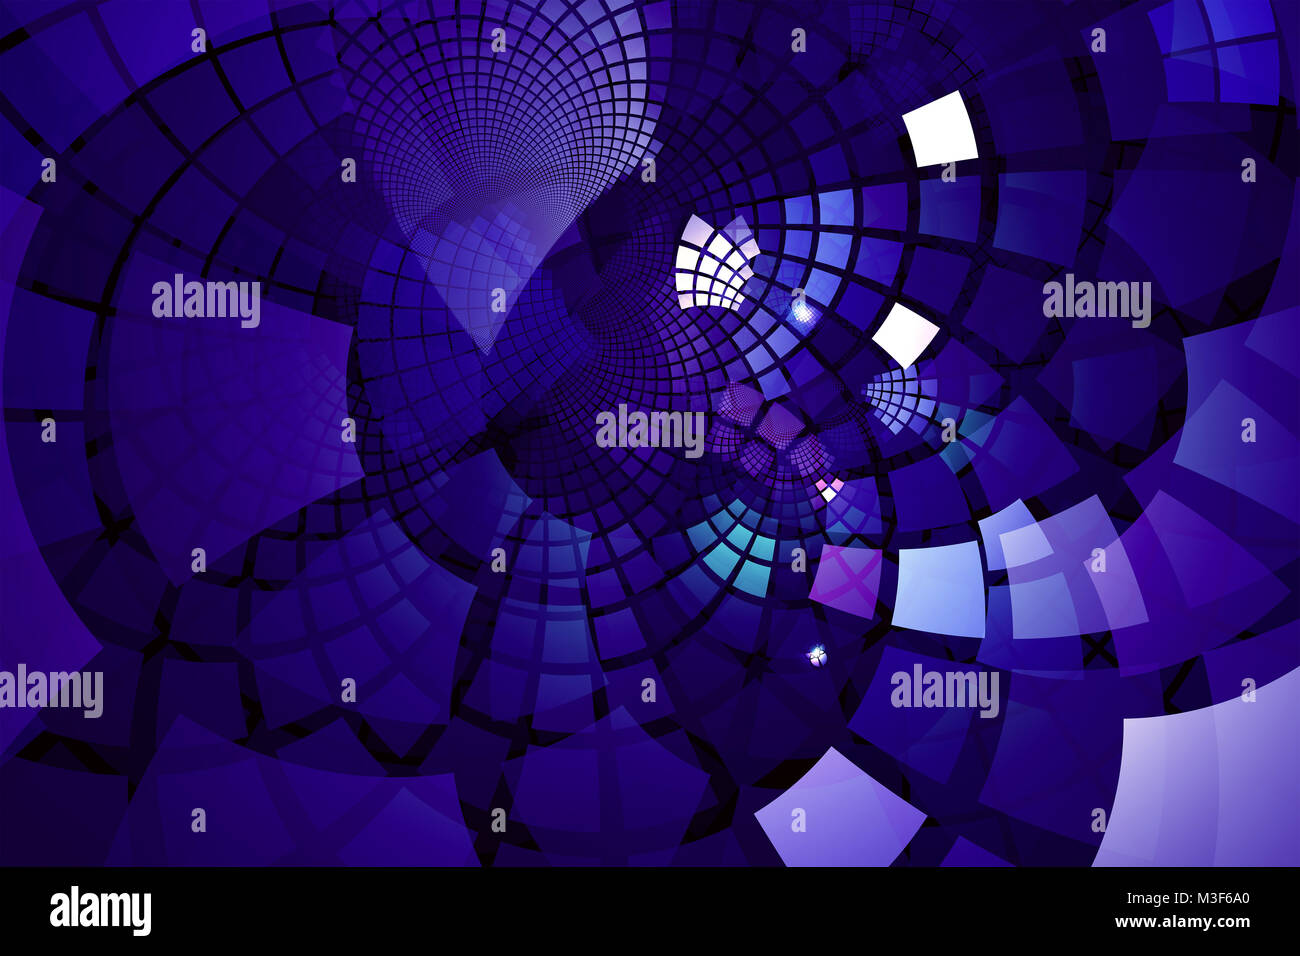 Avec le violet fractale des tuiles sur les courbes, un abstract background image Banque D'Images